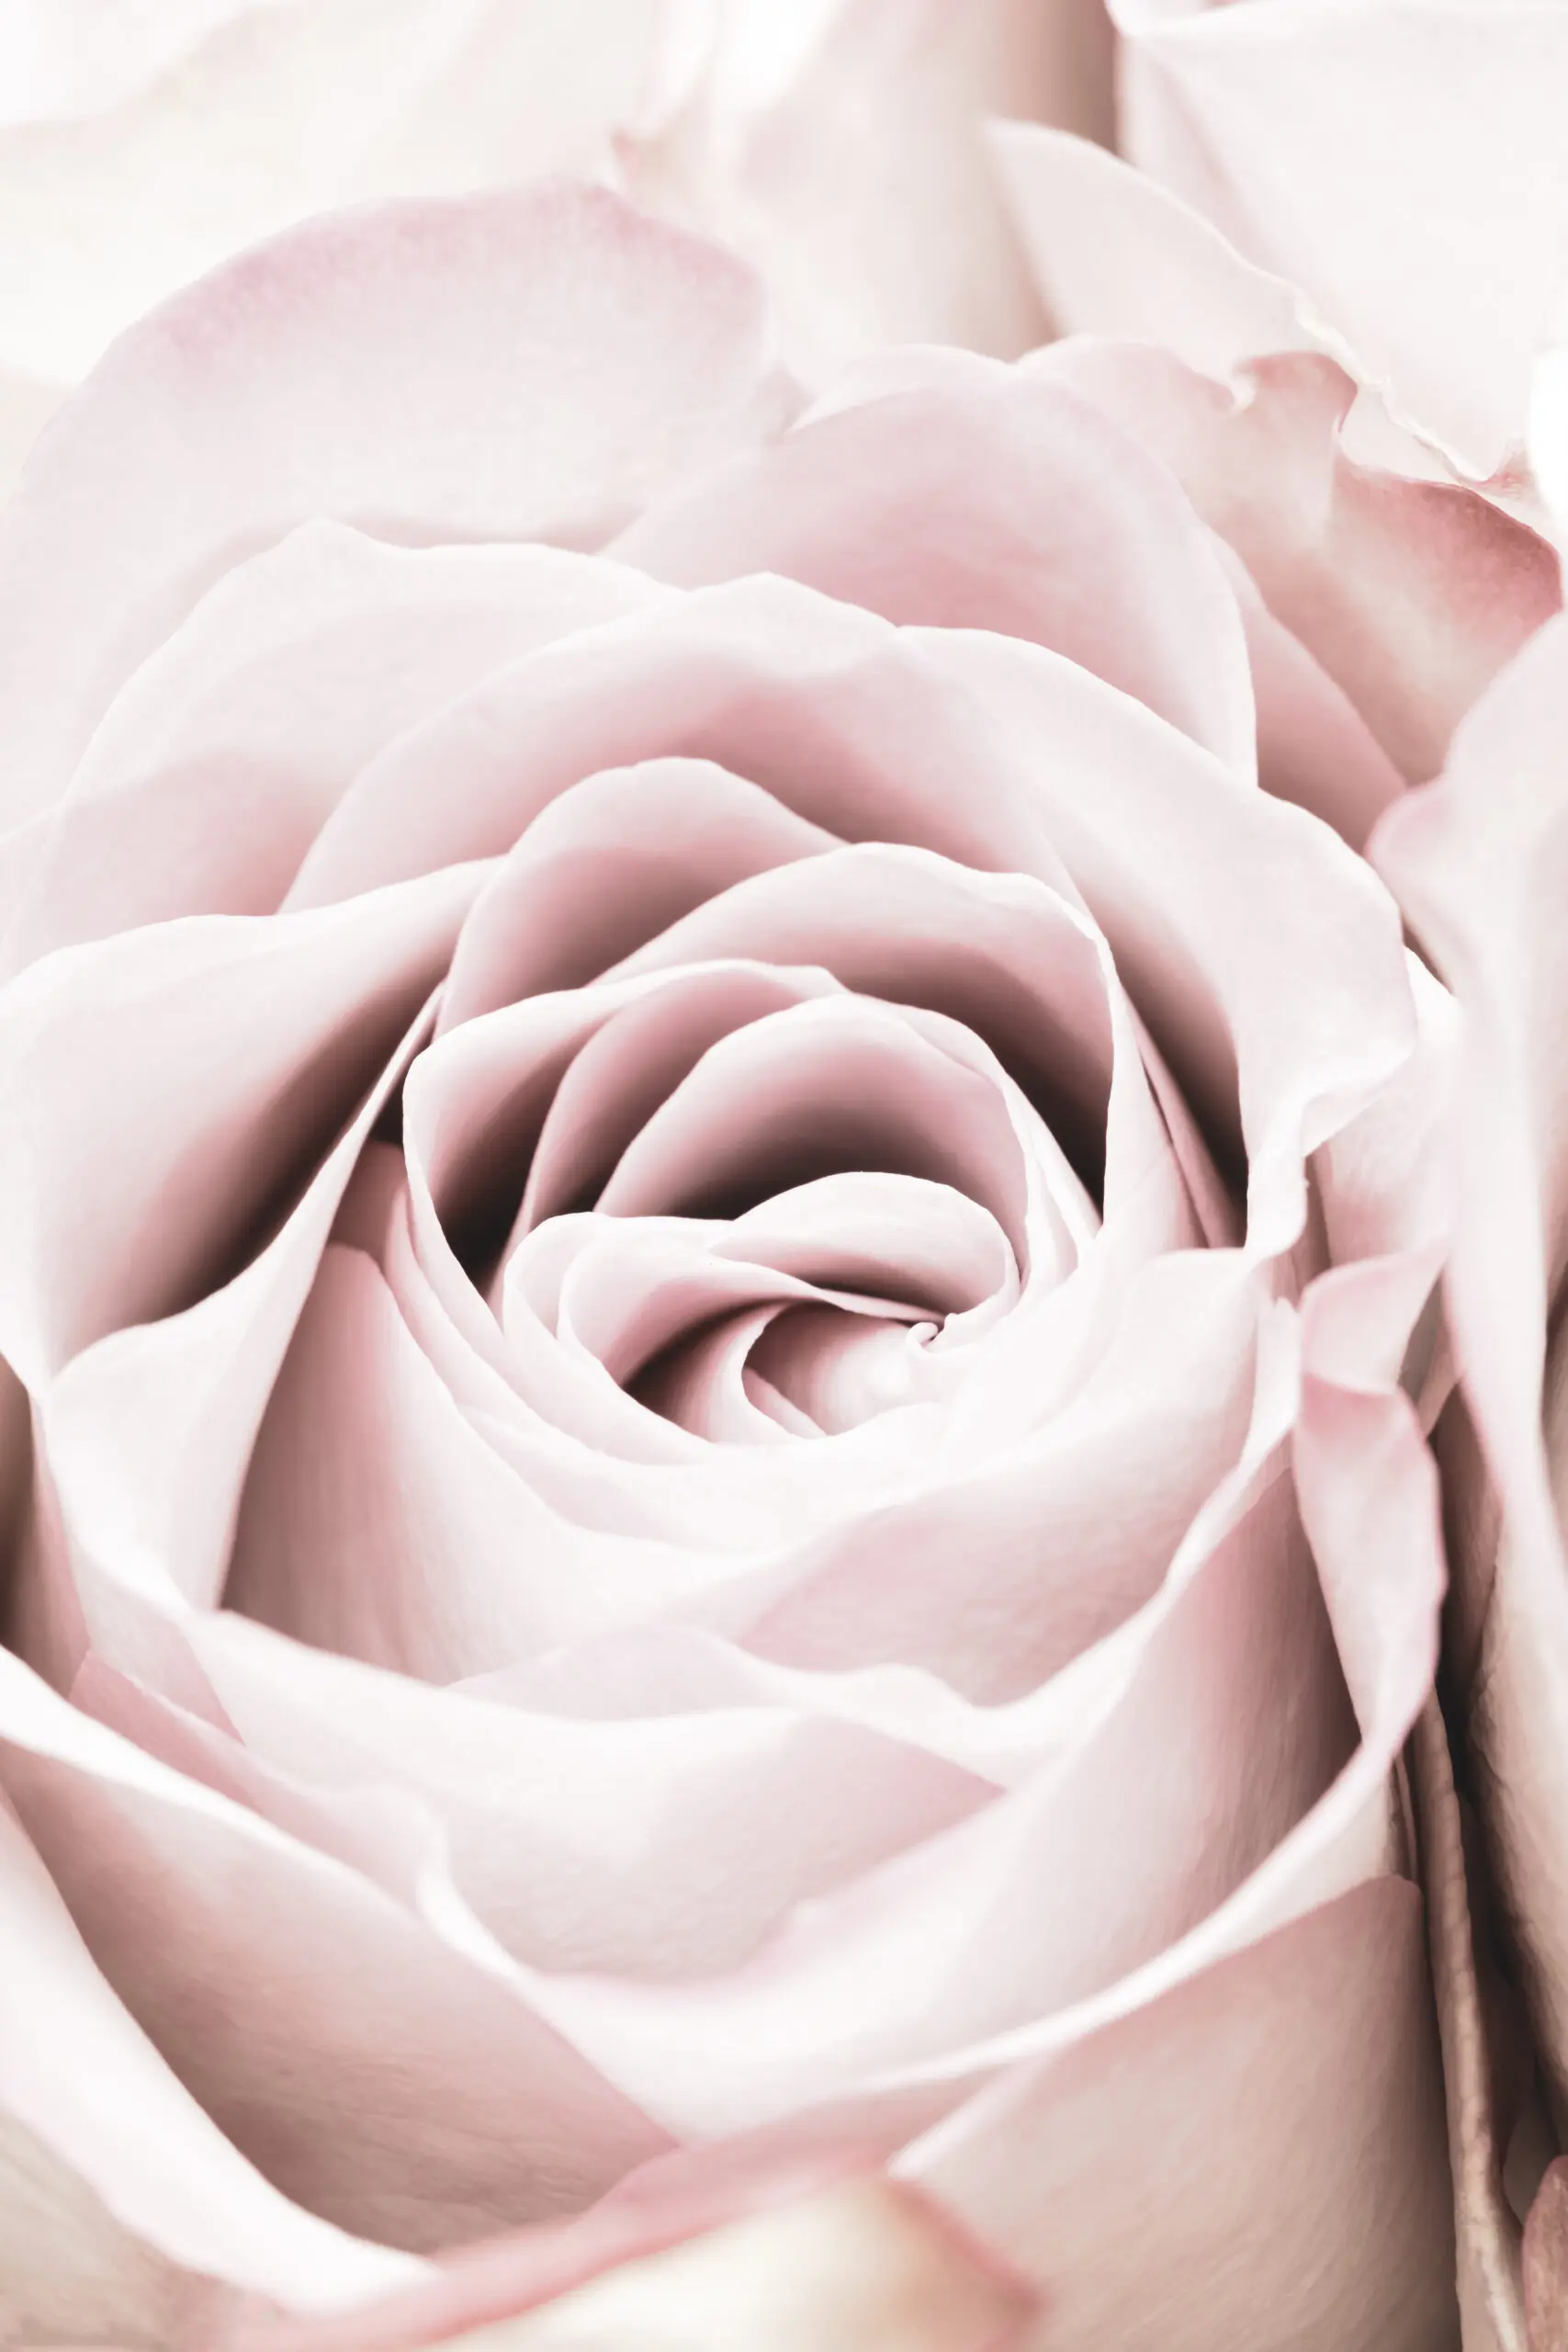 Wandbild (6096) Pink Rose No 06 by 1x.com studio präsentiert: Stillleben,Details und Strukturen,Natur,Blumen und Blüten,Makro,Floral